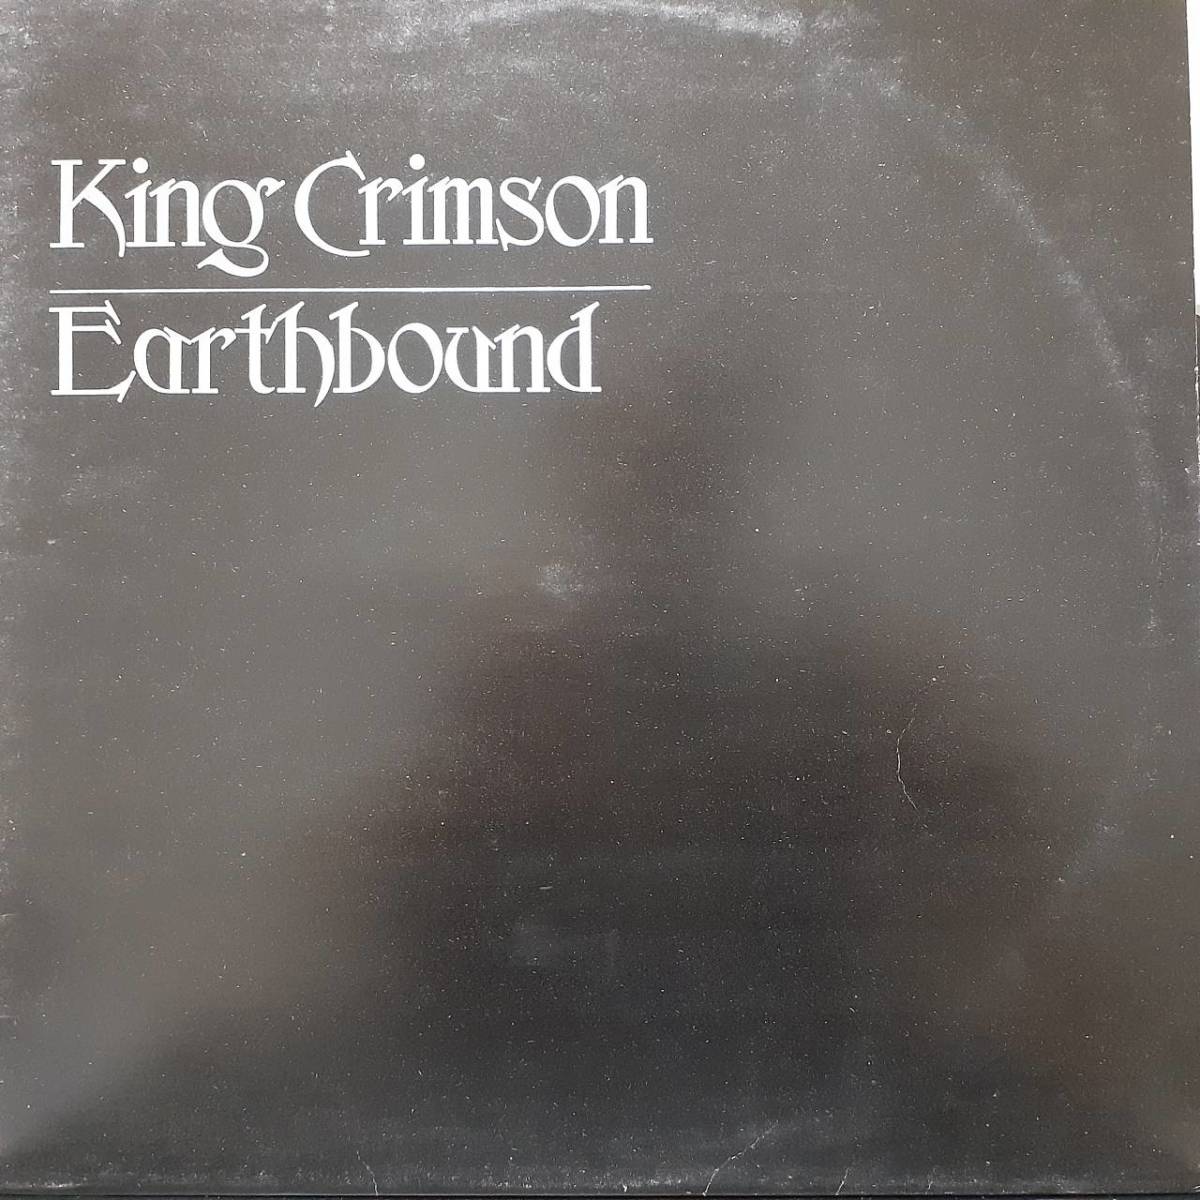 Островный оригинальный LP! Большой глаз (i) лейбл! 1U и 2U! Король Багро / Земля 1972 года.